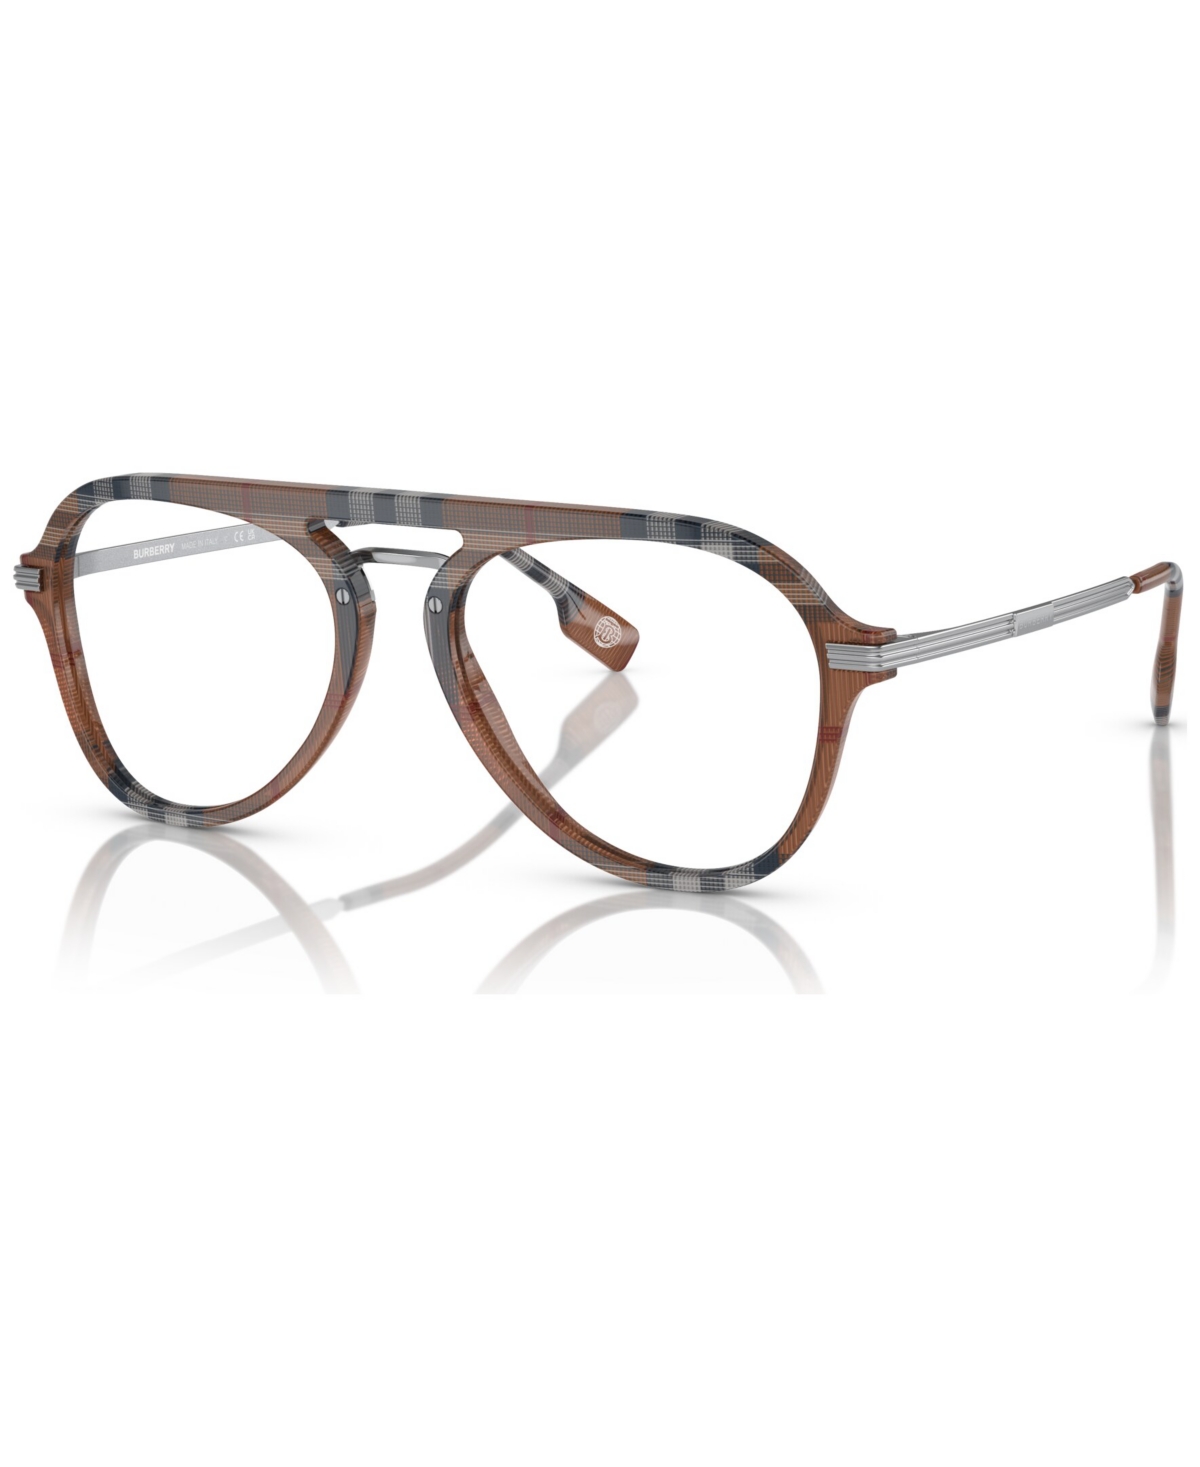 Men's Pilot Eyeglasses, BE2377 55 - Check Brown